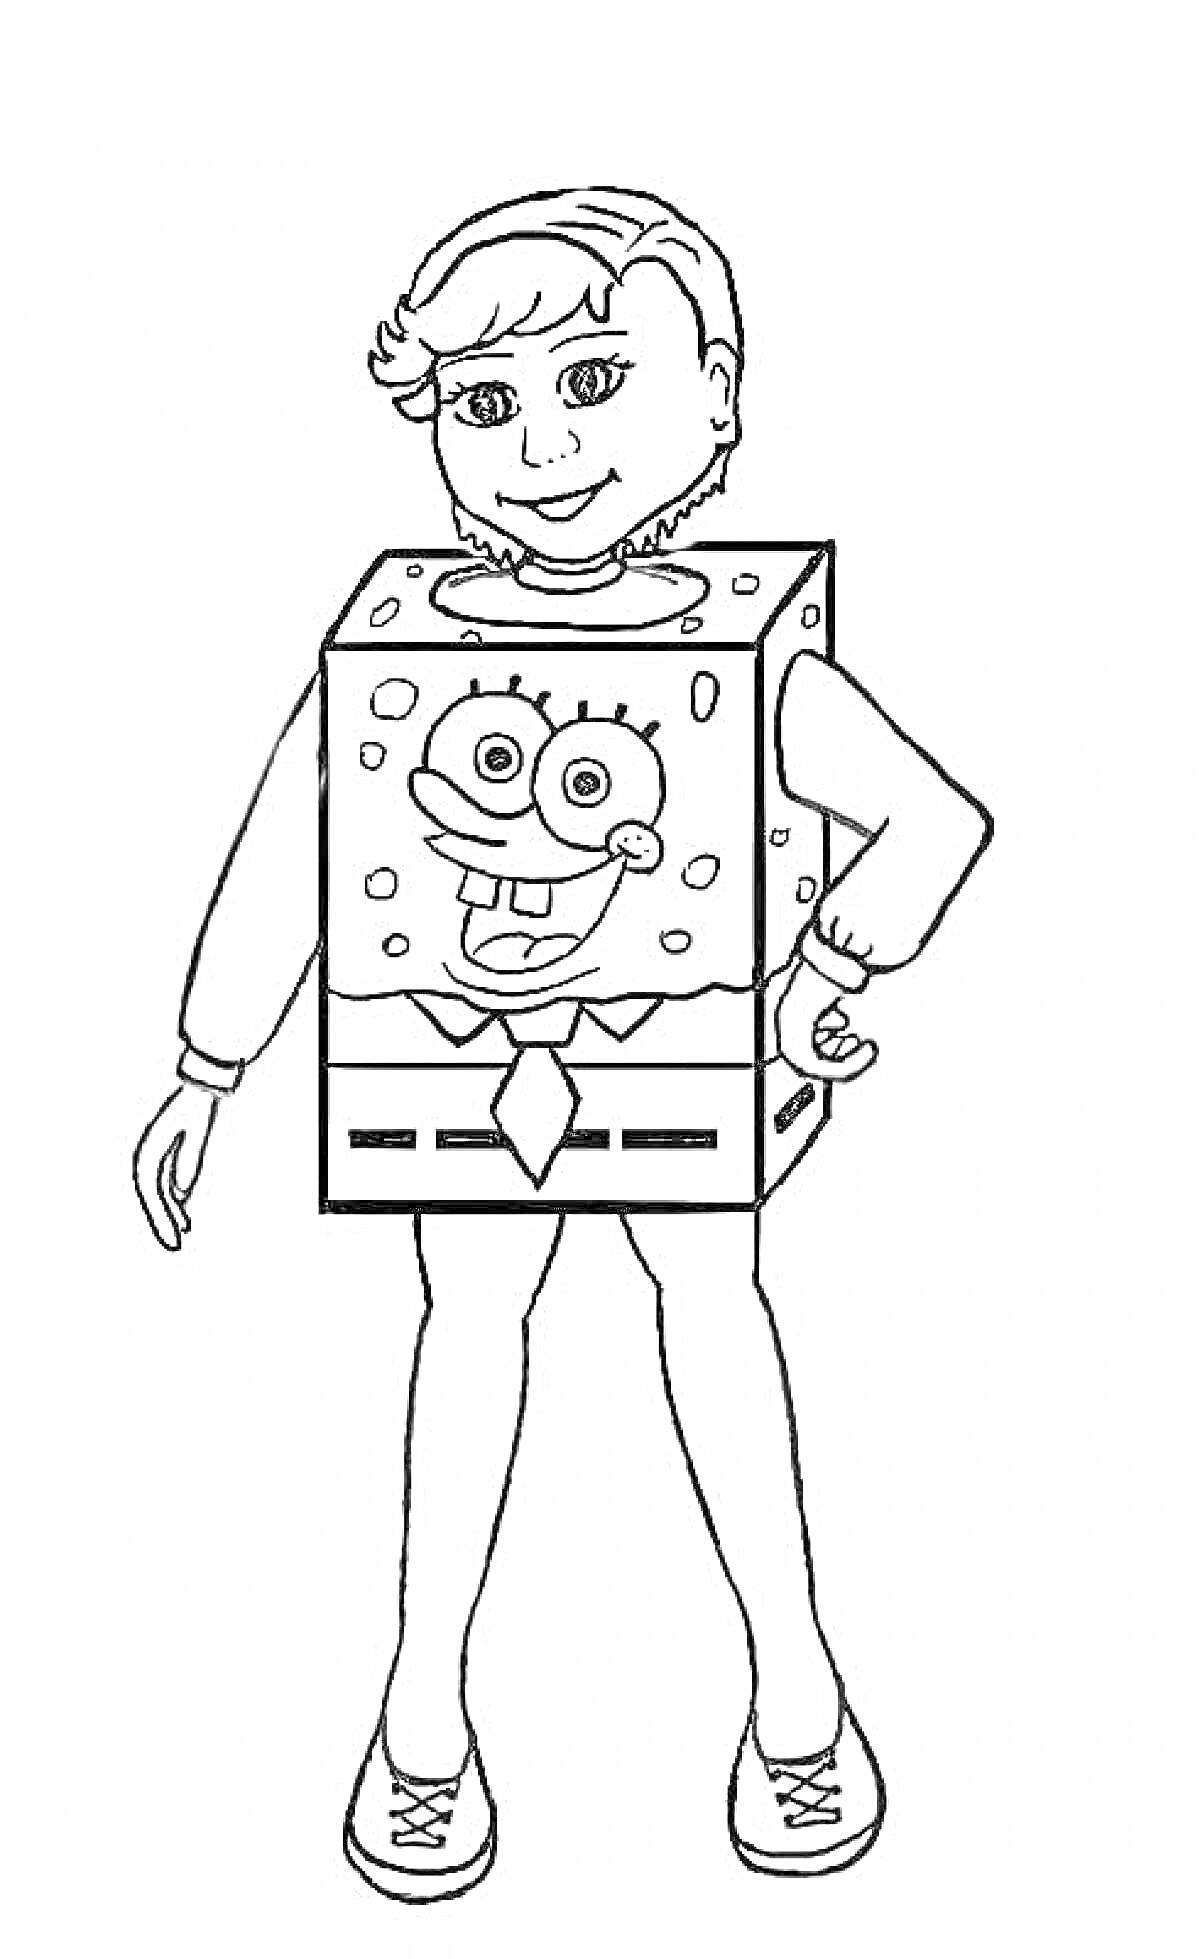 Костюм Спанч Боб. Ребёнок в костюме персонажа мультфильма Спанч Боб с тематическими деталями: квадратный костюм с изображением лица Спанч Боба, руки и ноги ребёнка вне костюма, кроссовки.